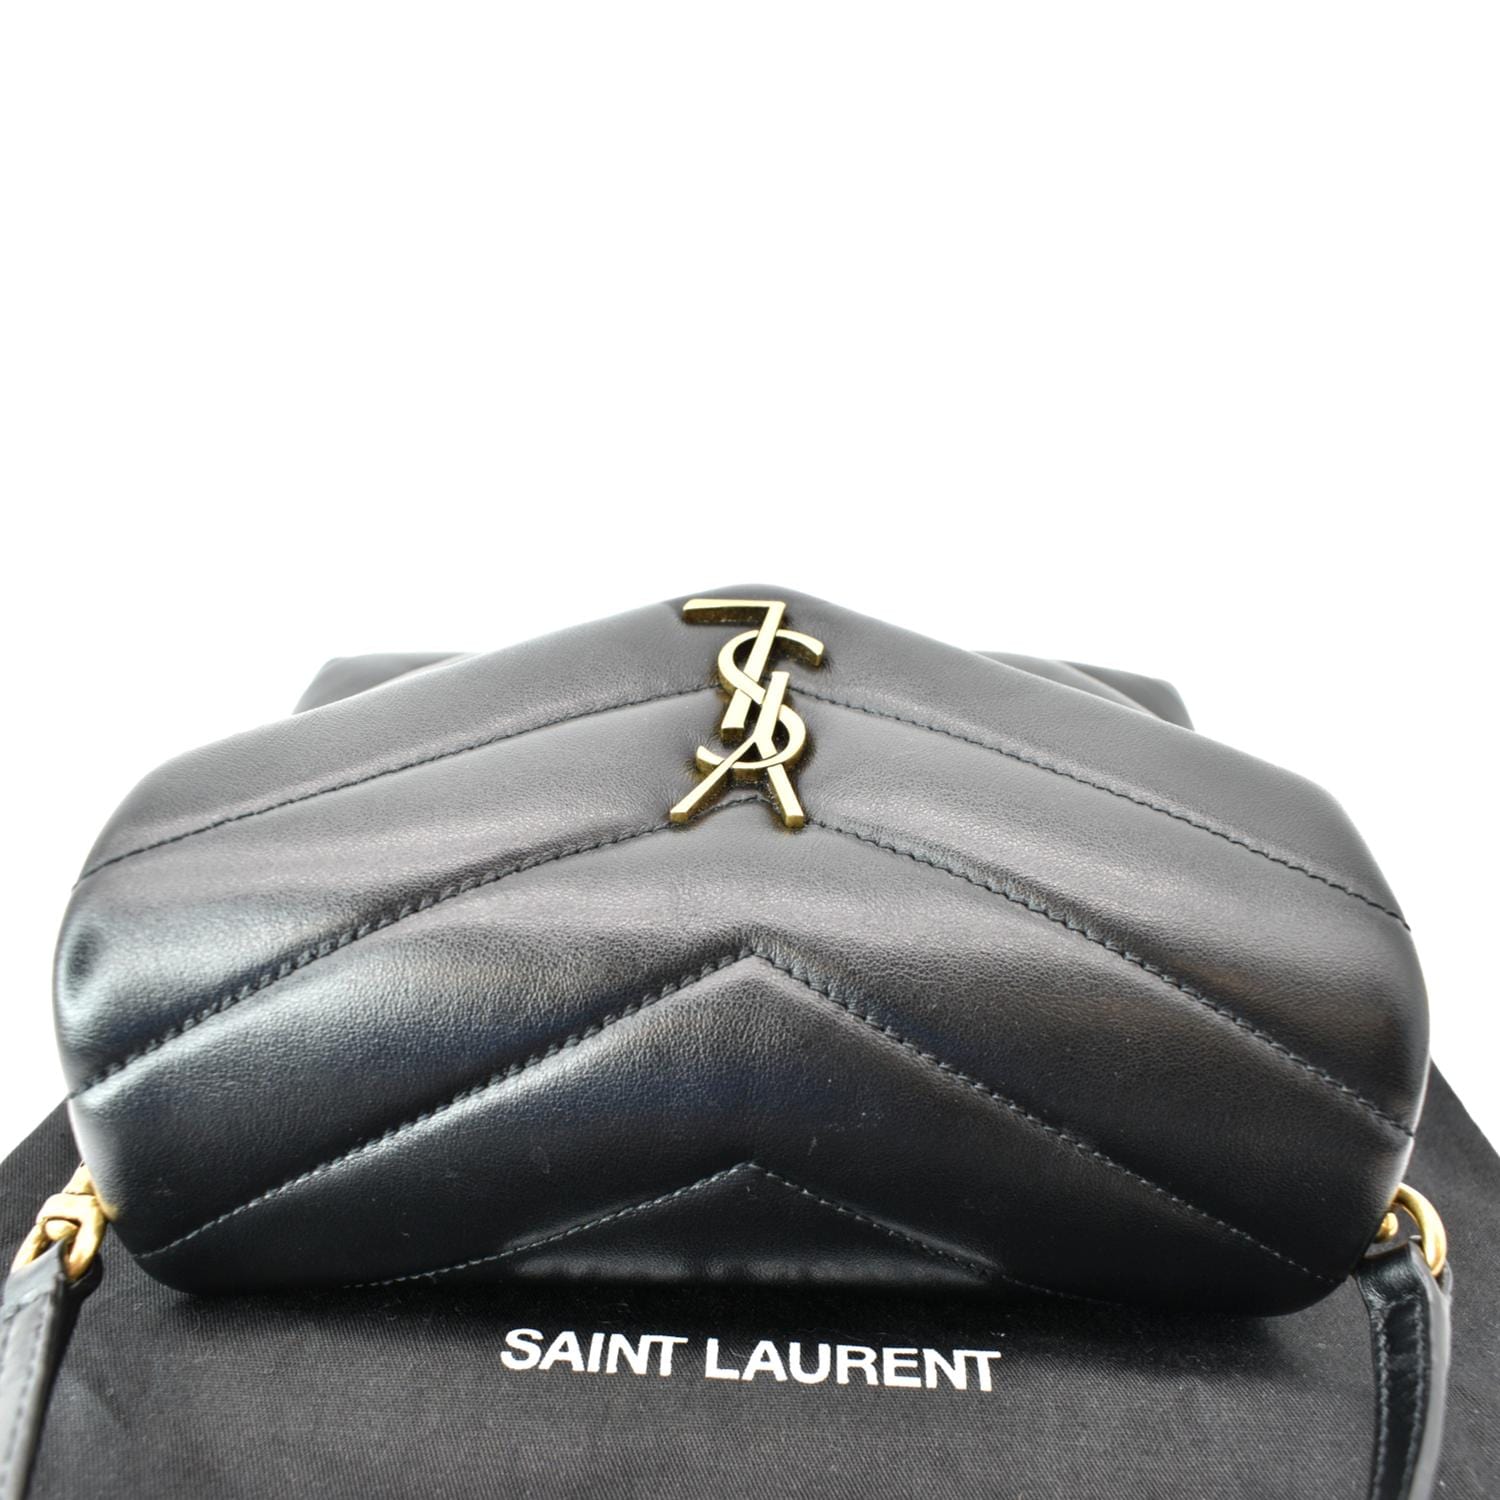 Saint Laurent Toy Lou Lou Matelassé Y Bag - Black